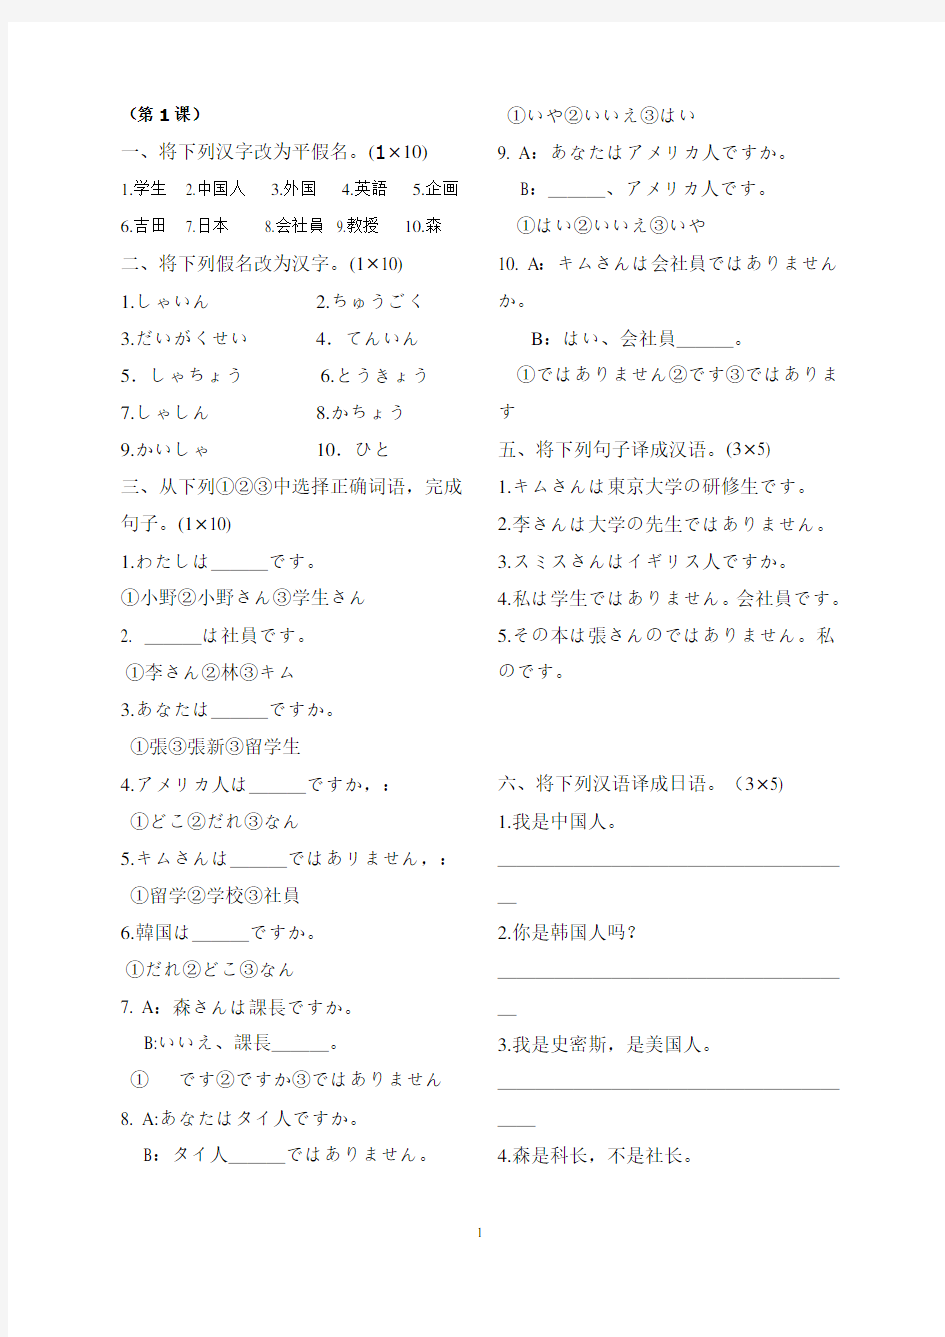 标准日本语同步测试卷_初级(含答案)